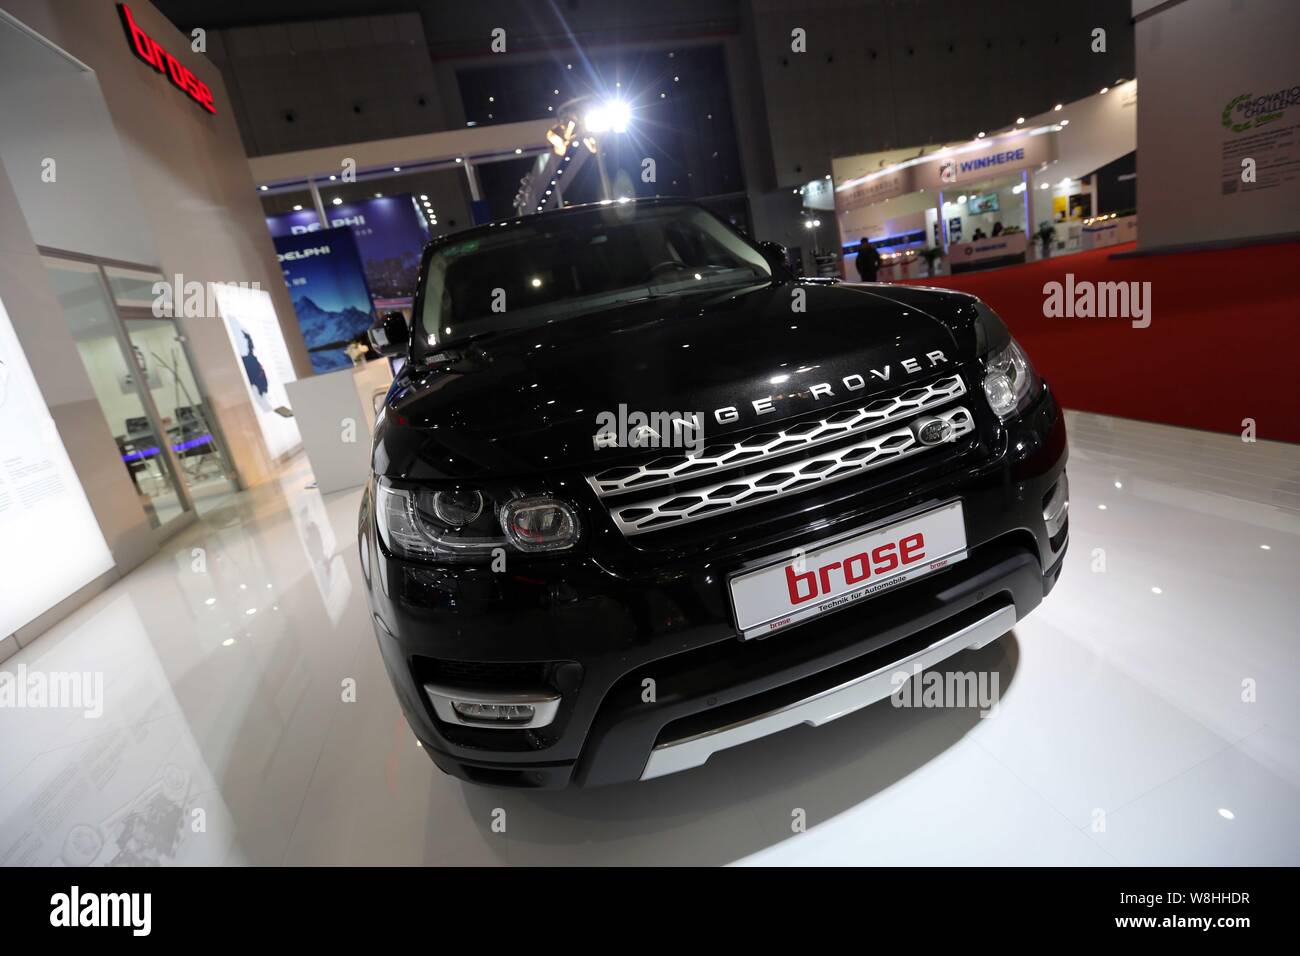 Un SUV Brose de Jaguar Land Rover est sur l'affichage lors du 16ème Salon International de l'Automobile International de Shanghai, également connu sous le nom de Auto Shanghai 2015 Banque D'Images